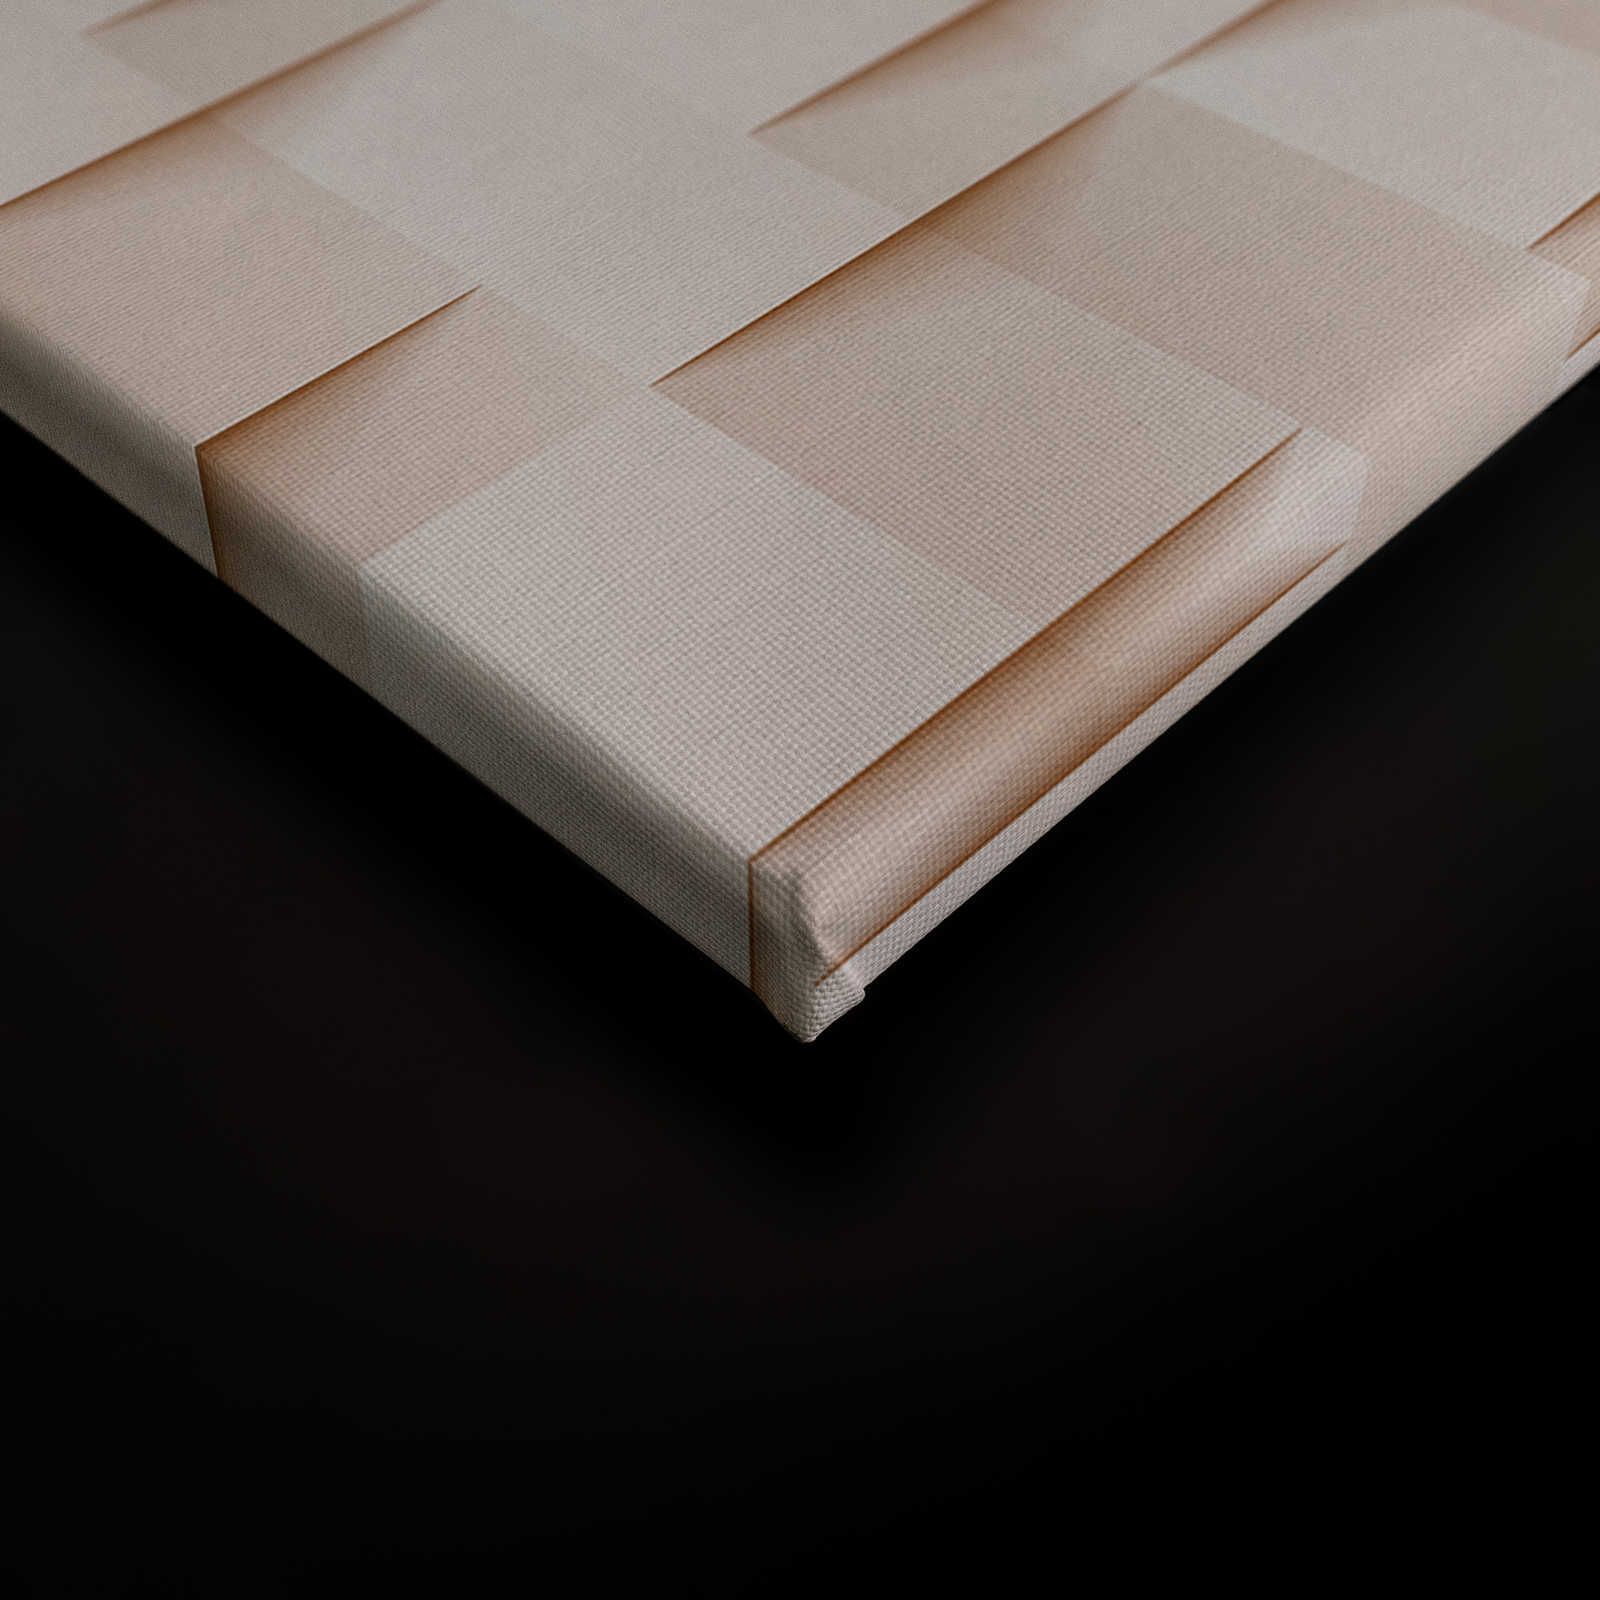             Paper House 1 - Toile 3D structure papier origami plissé - 0,90 m x 0,60 m
        